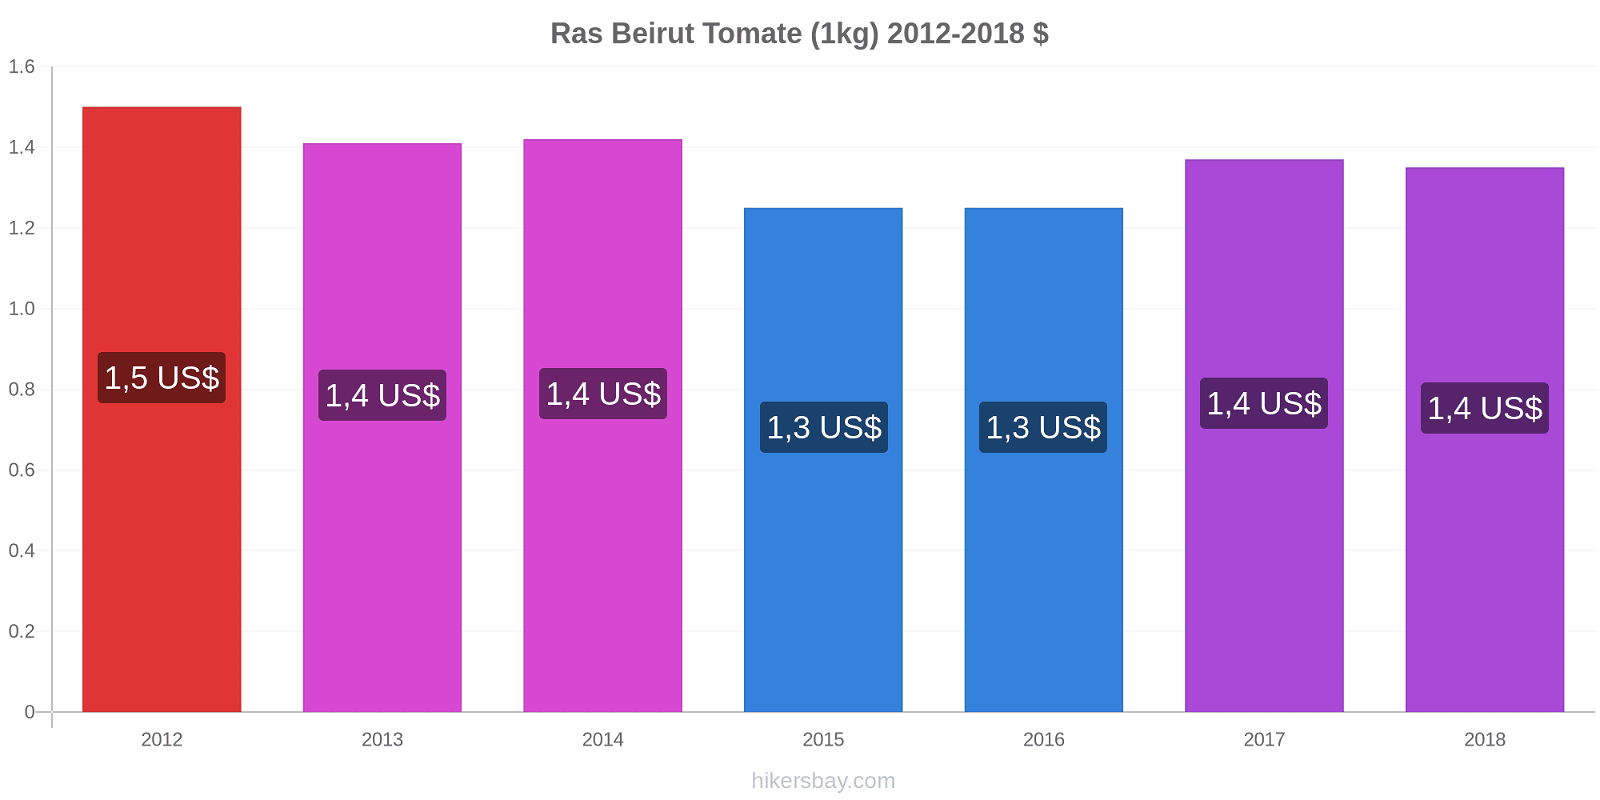 Ras Beirut cambios de precios Tomate (1kg) hikersbay.com